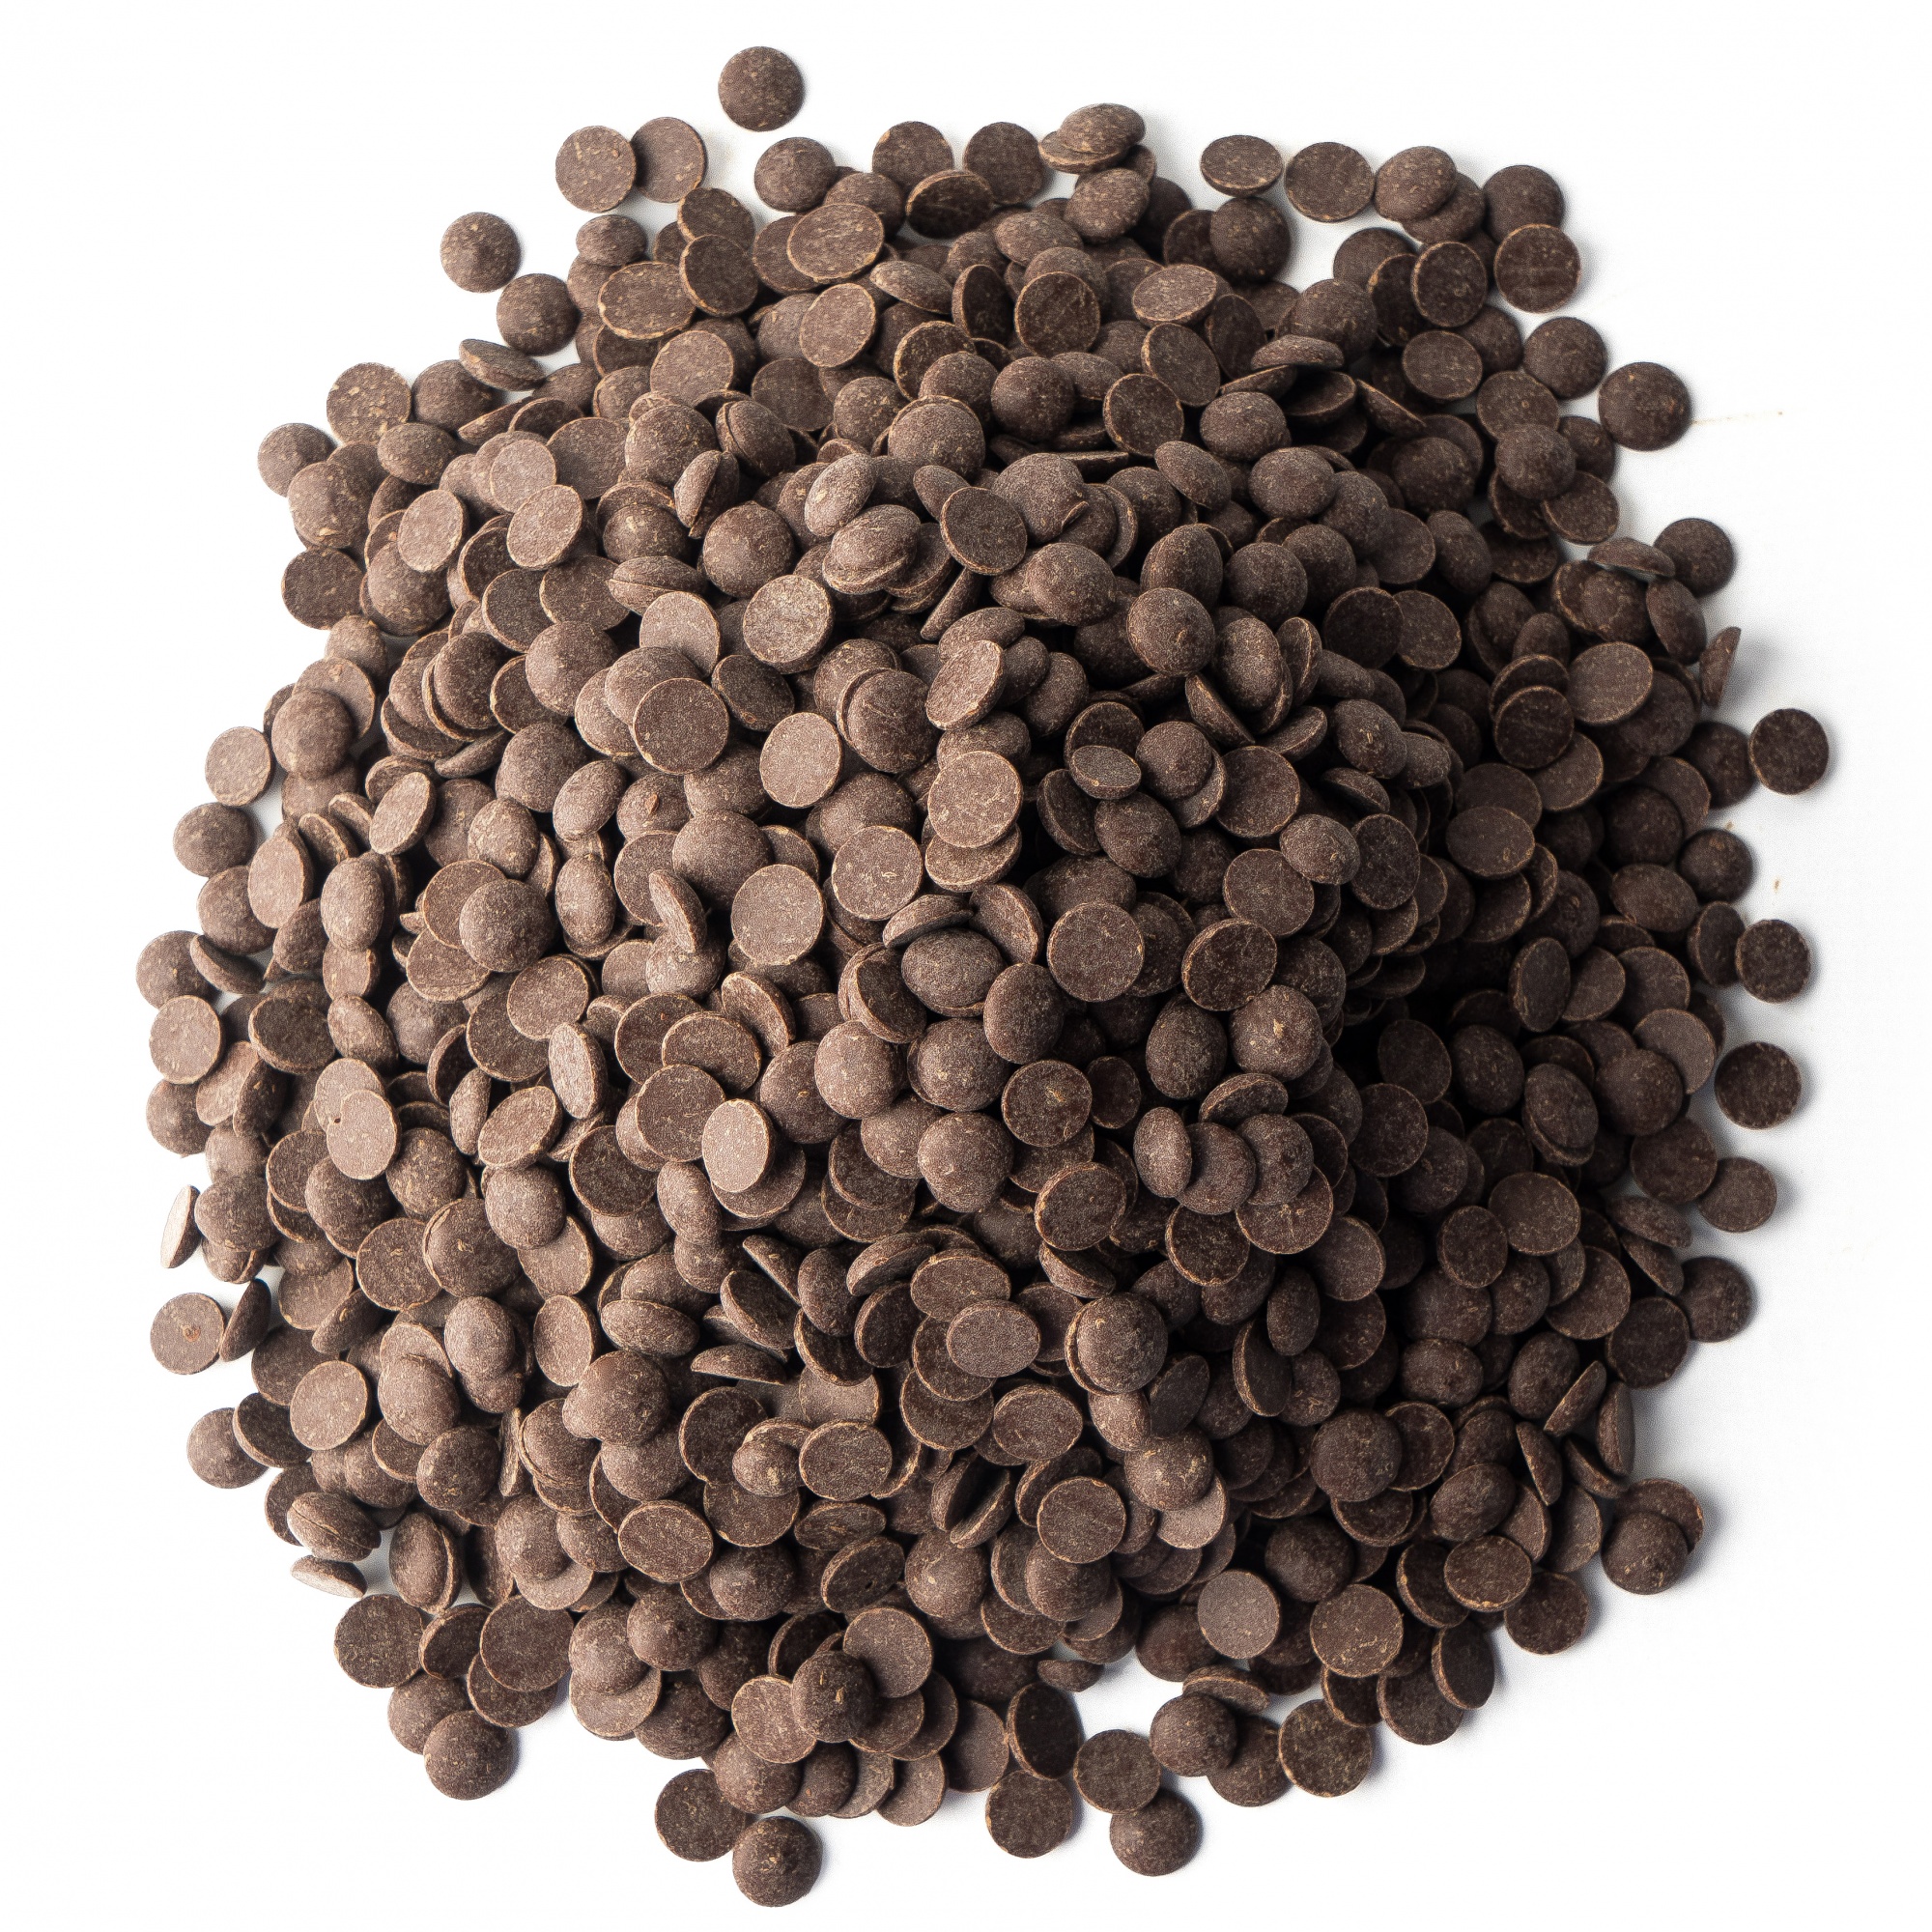 Шоколад тёмный 54,5%, Callebaut, Бельгия, 1 кг  | Фото — Магазин Andy Chef  1